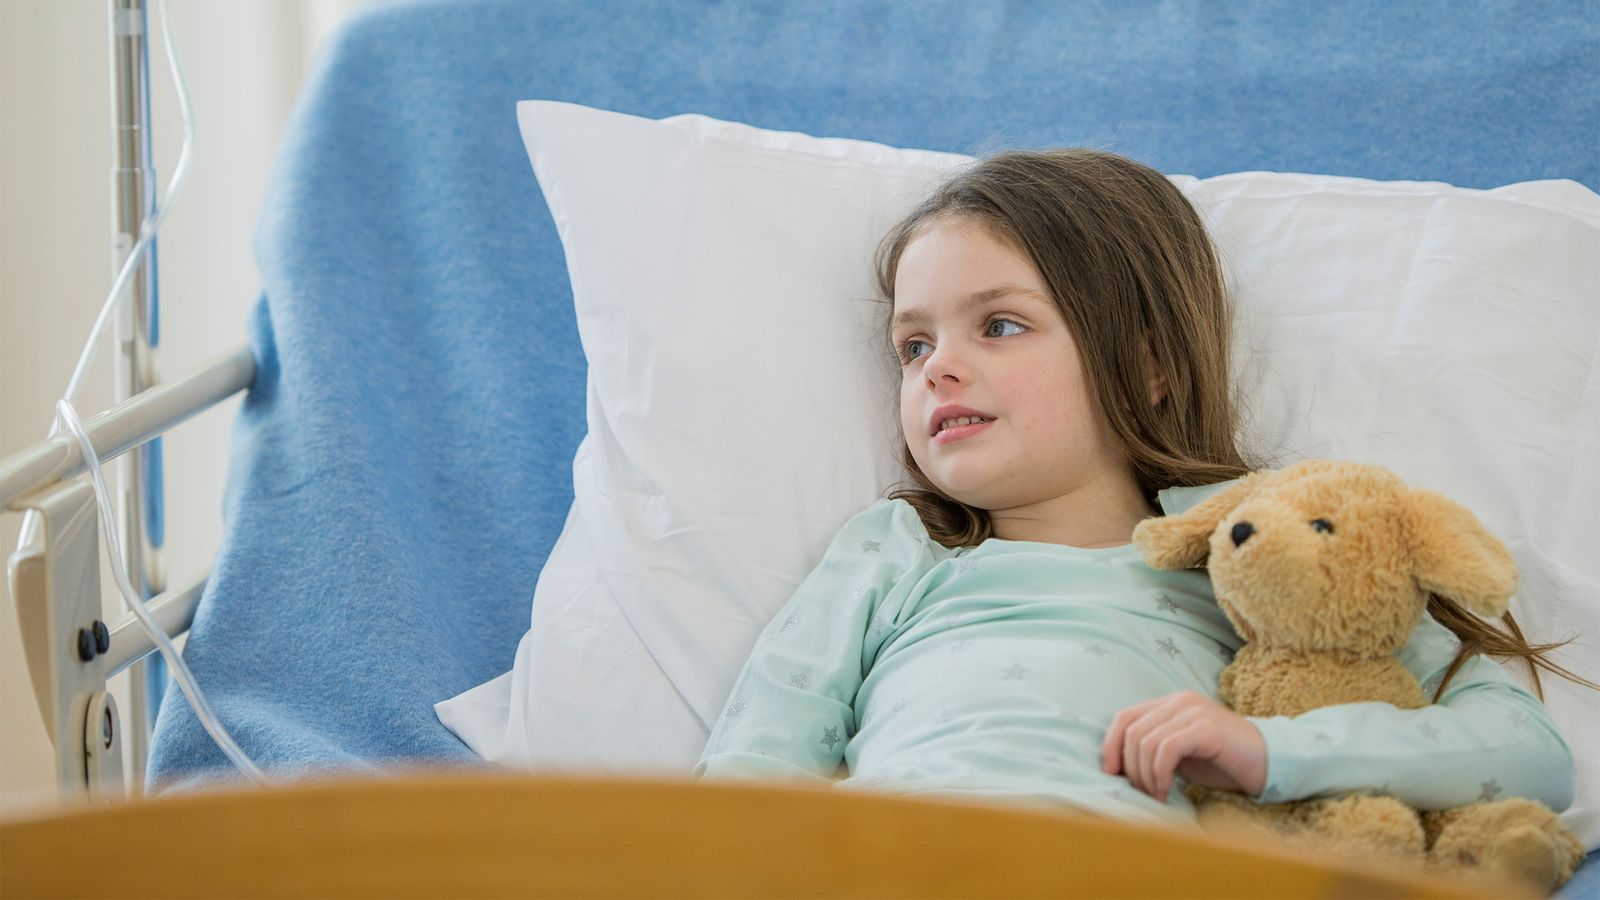 Kind ist im Krankenhaus und hält einen Teddy